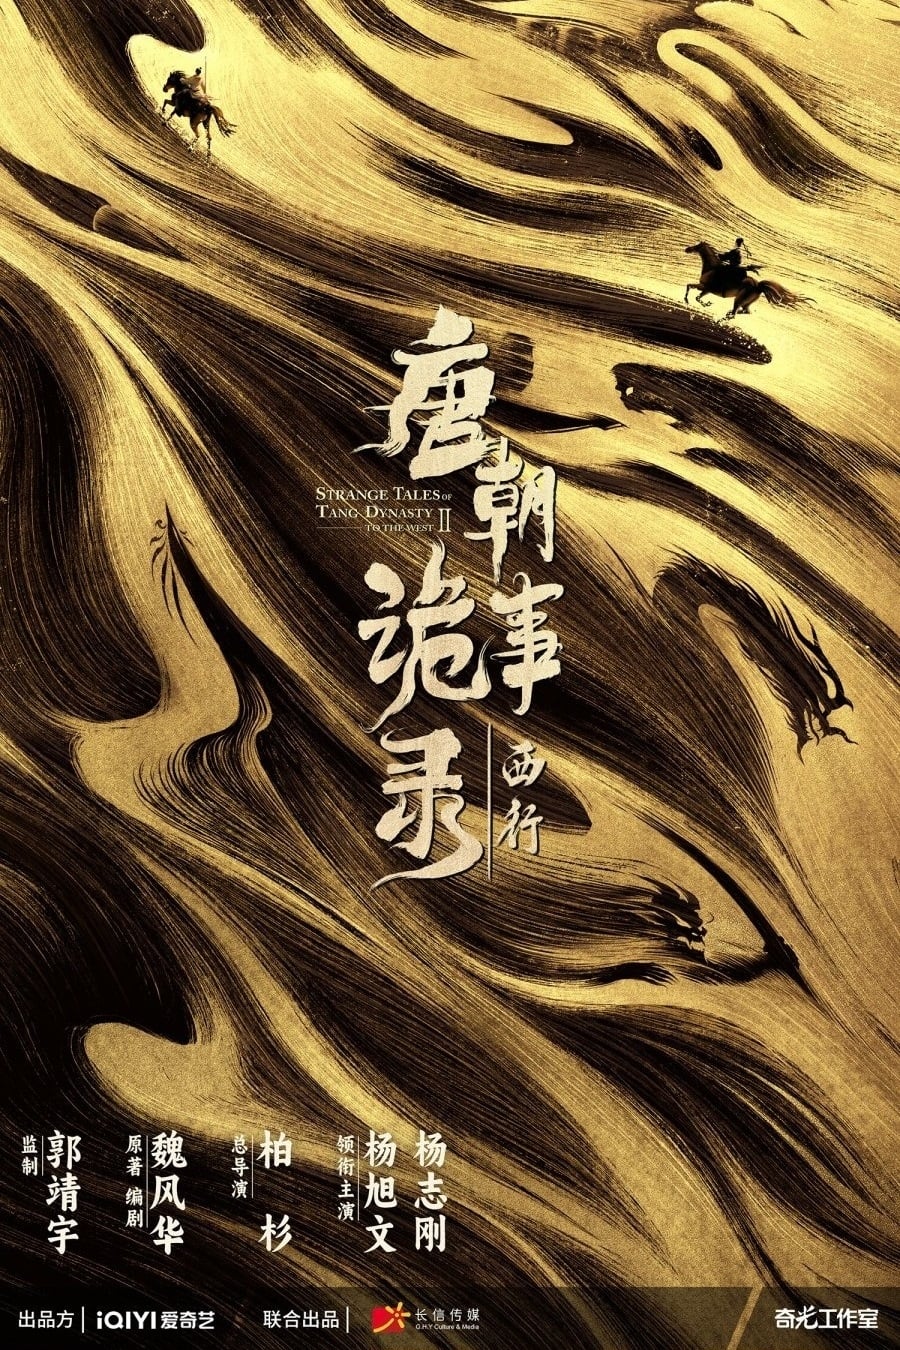 مسلسل Strange Tales of Tang Dynasty موسم 2 حلقة 21